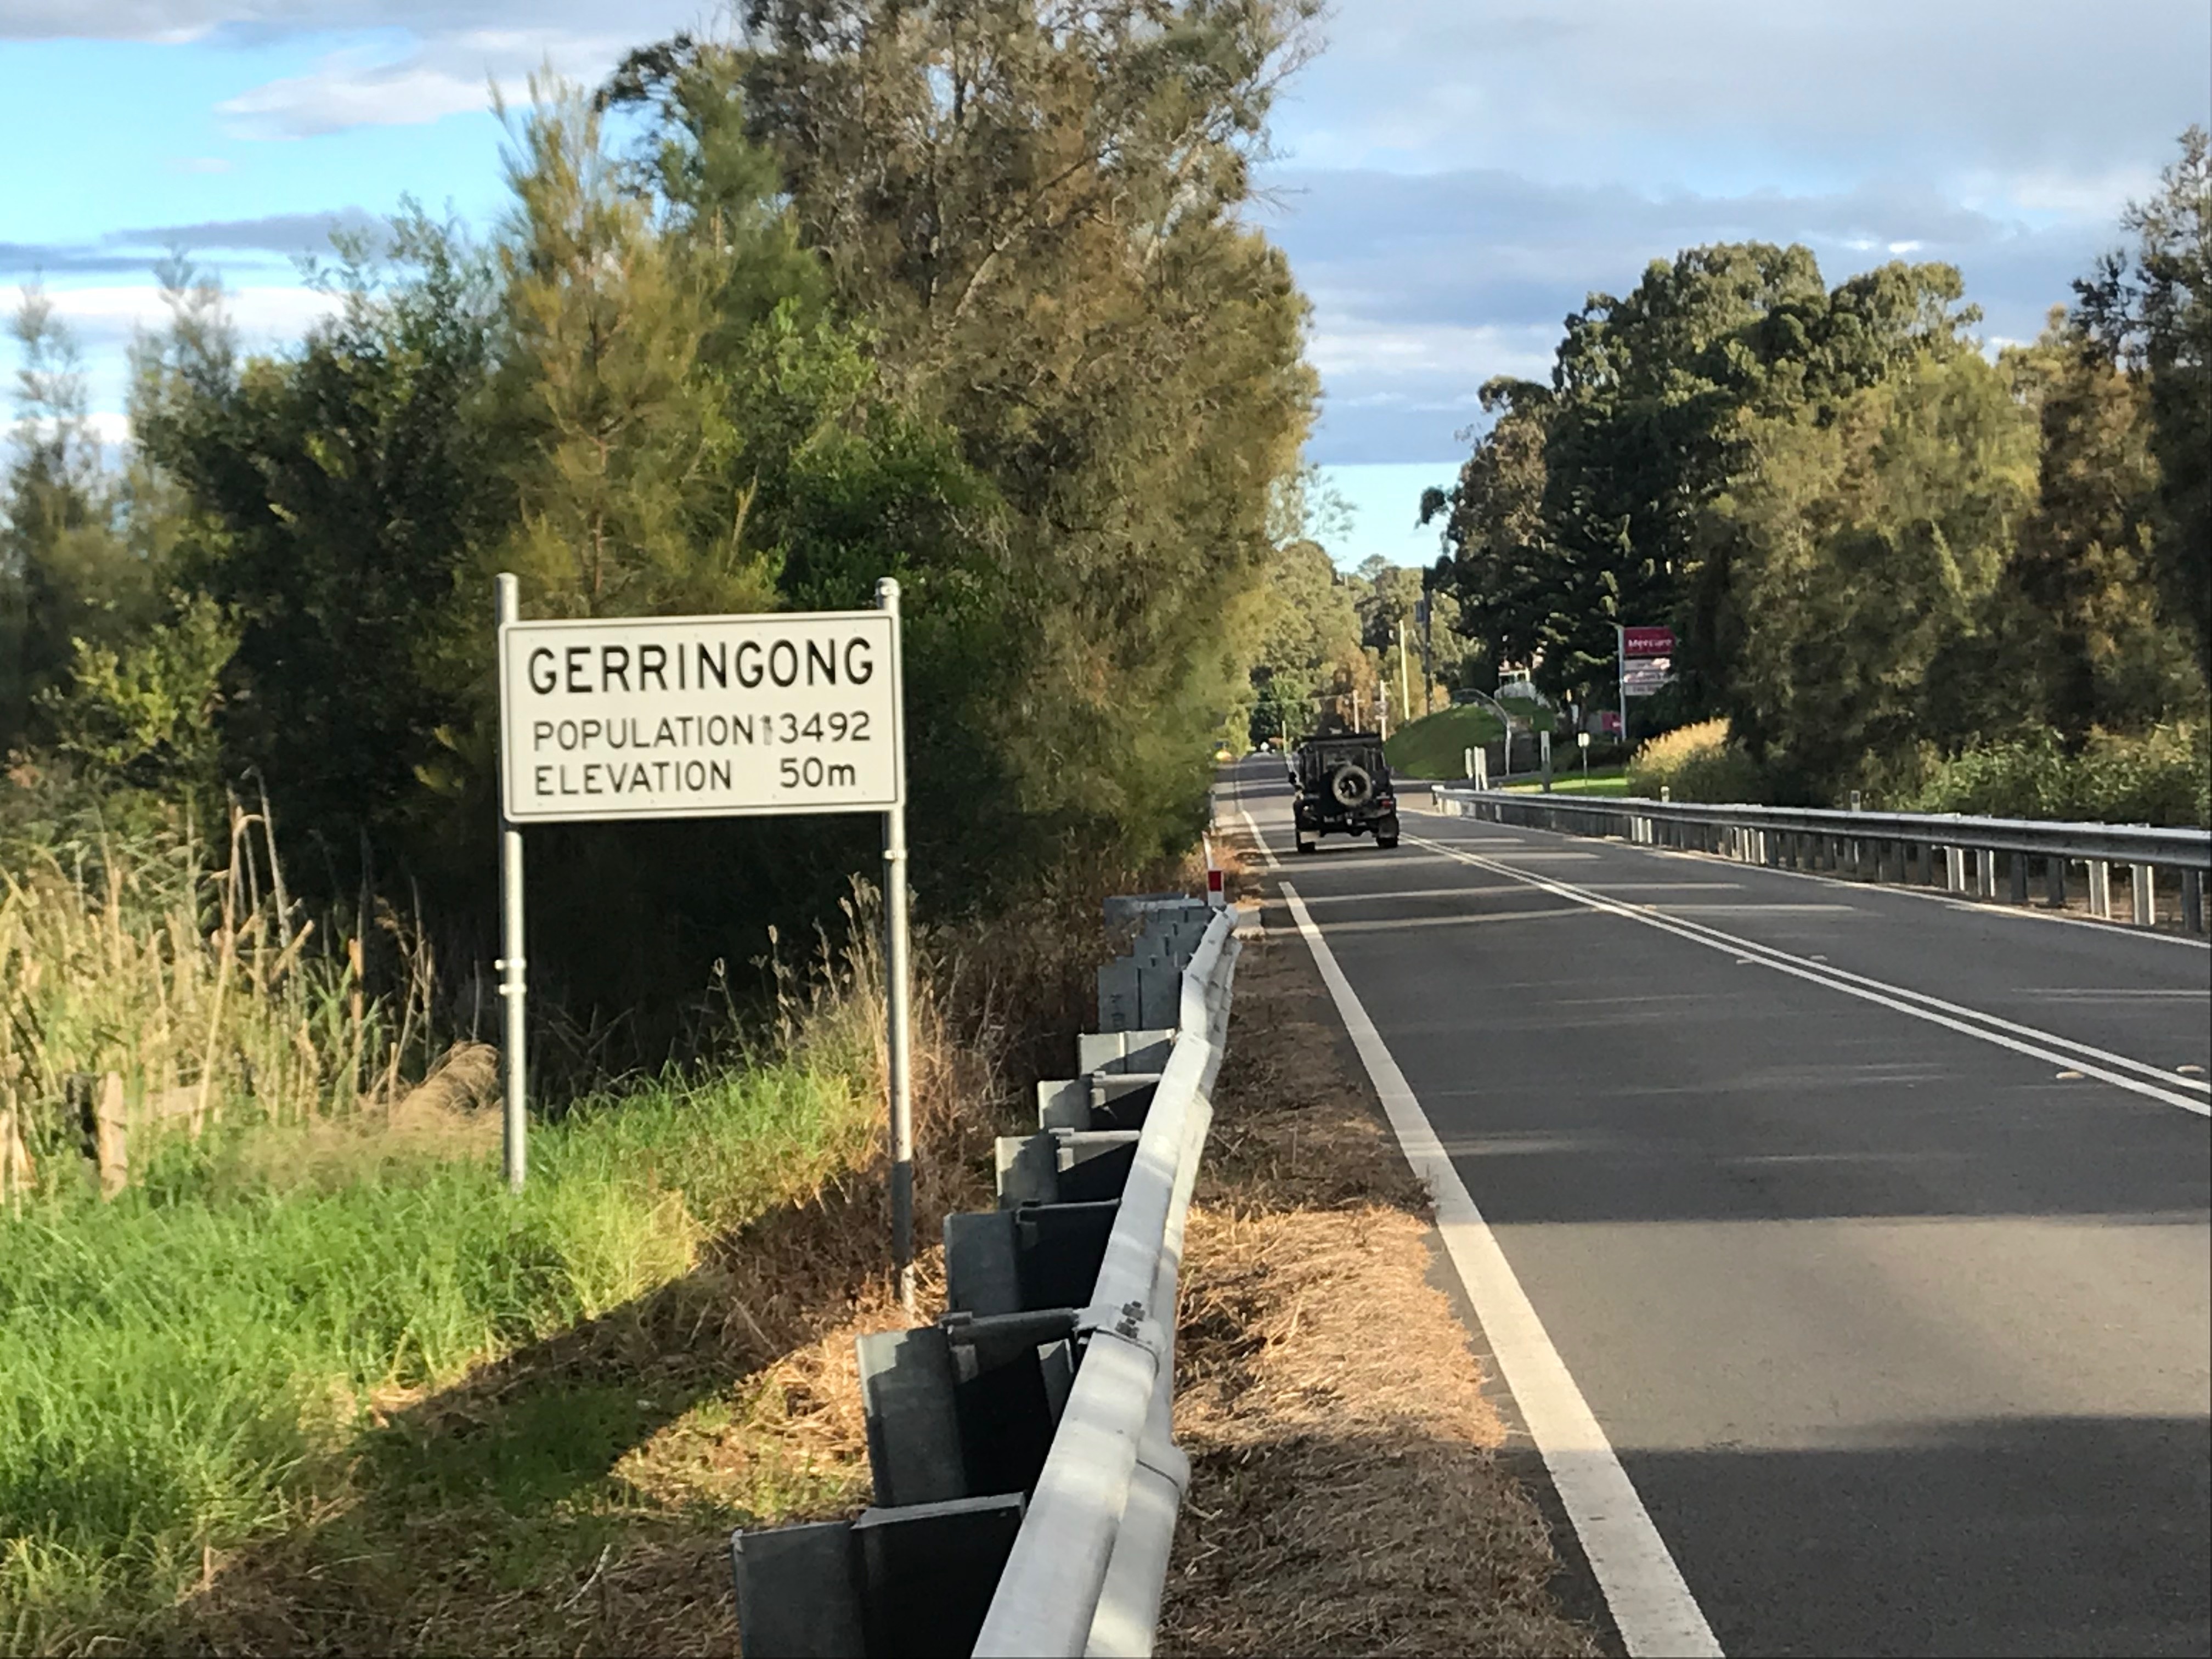 Gerringong is home to 3492 people.